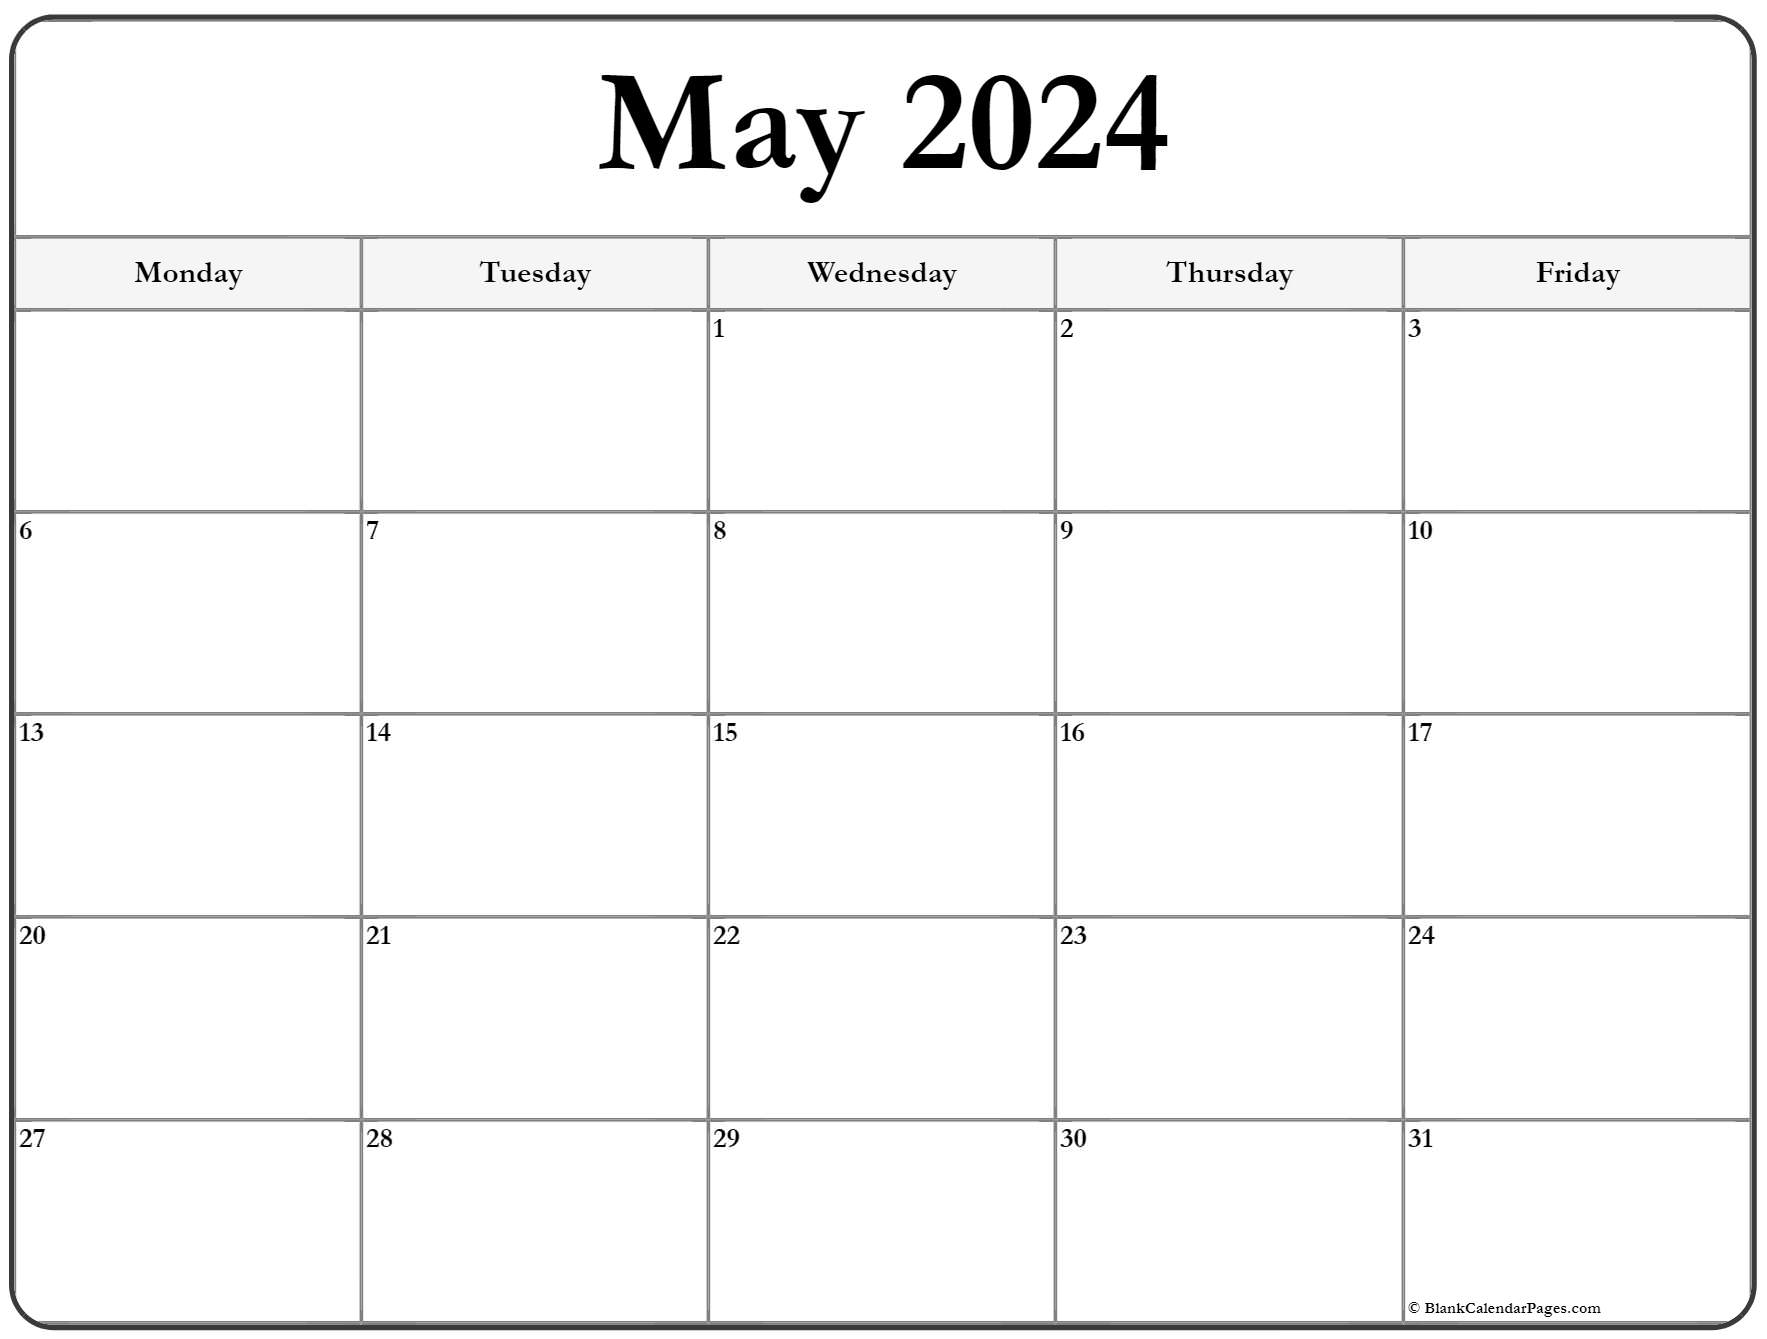 May 2020 Monday Calendar